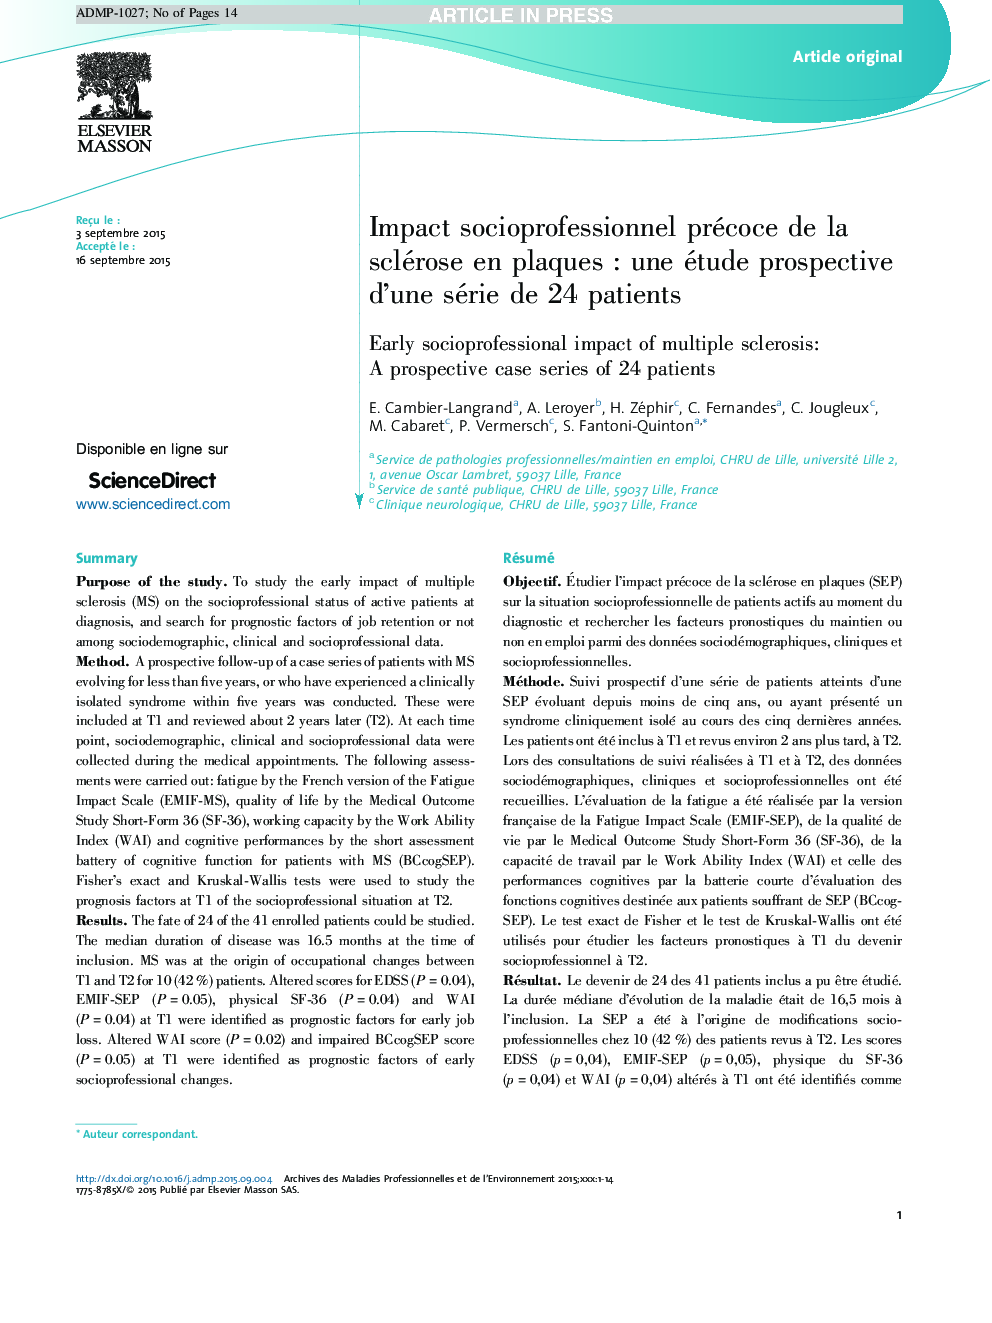 Impact socioprofessionnel précoce de la sclérose en plaquesÂ : une étude prospective d'une série de 24Â patients